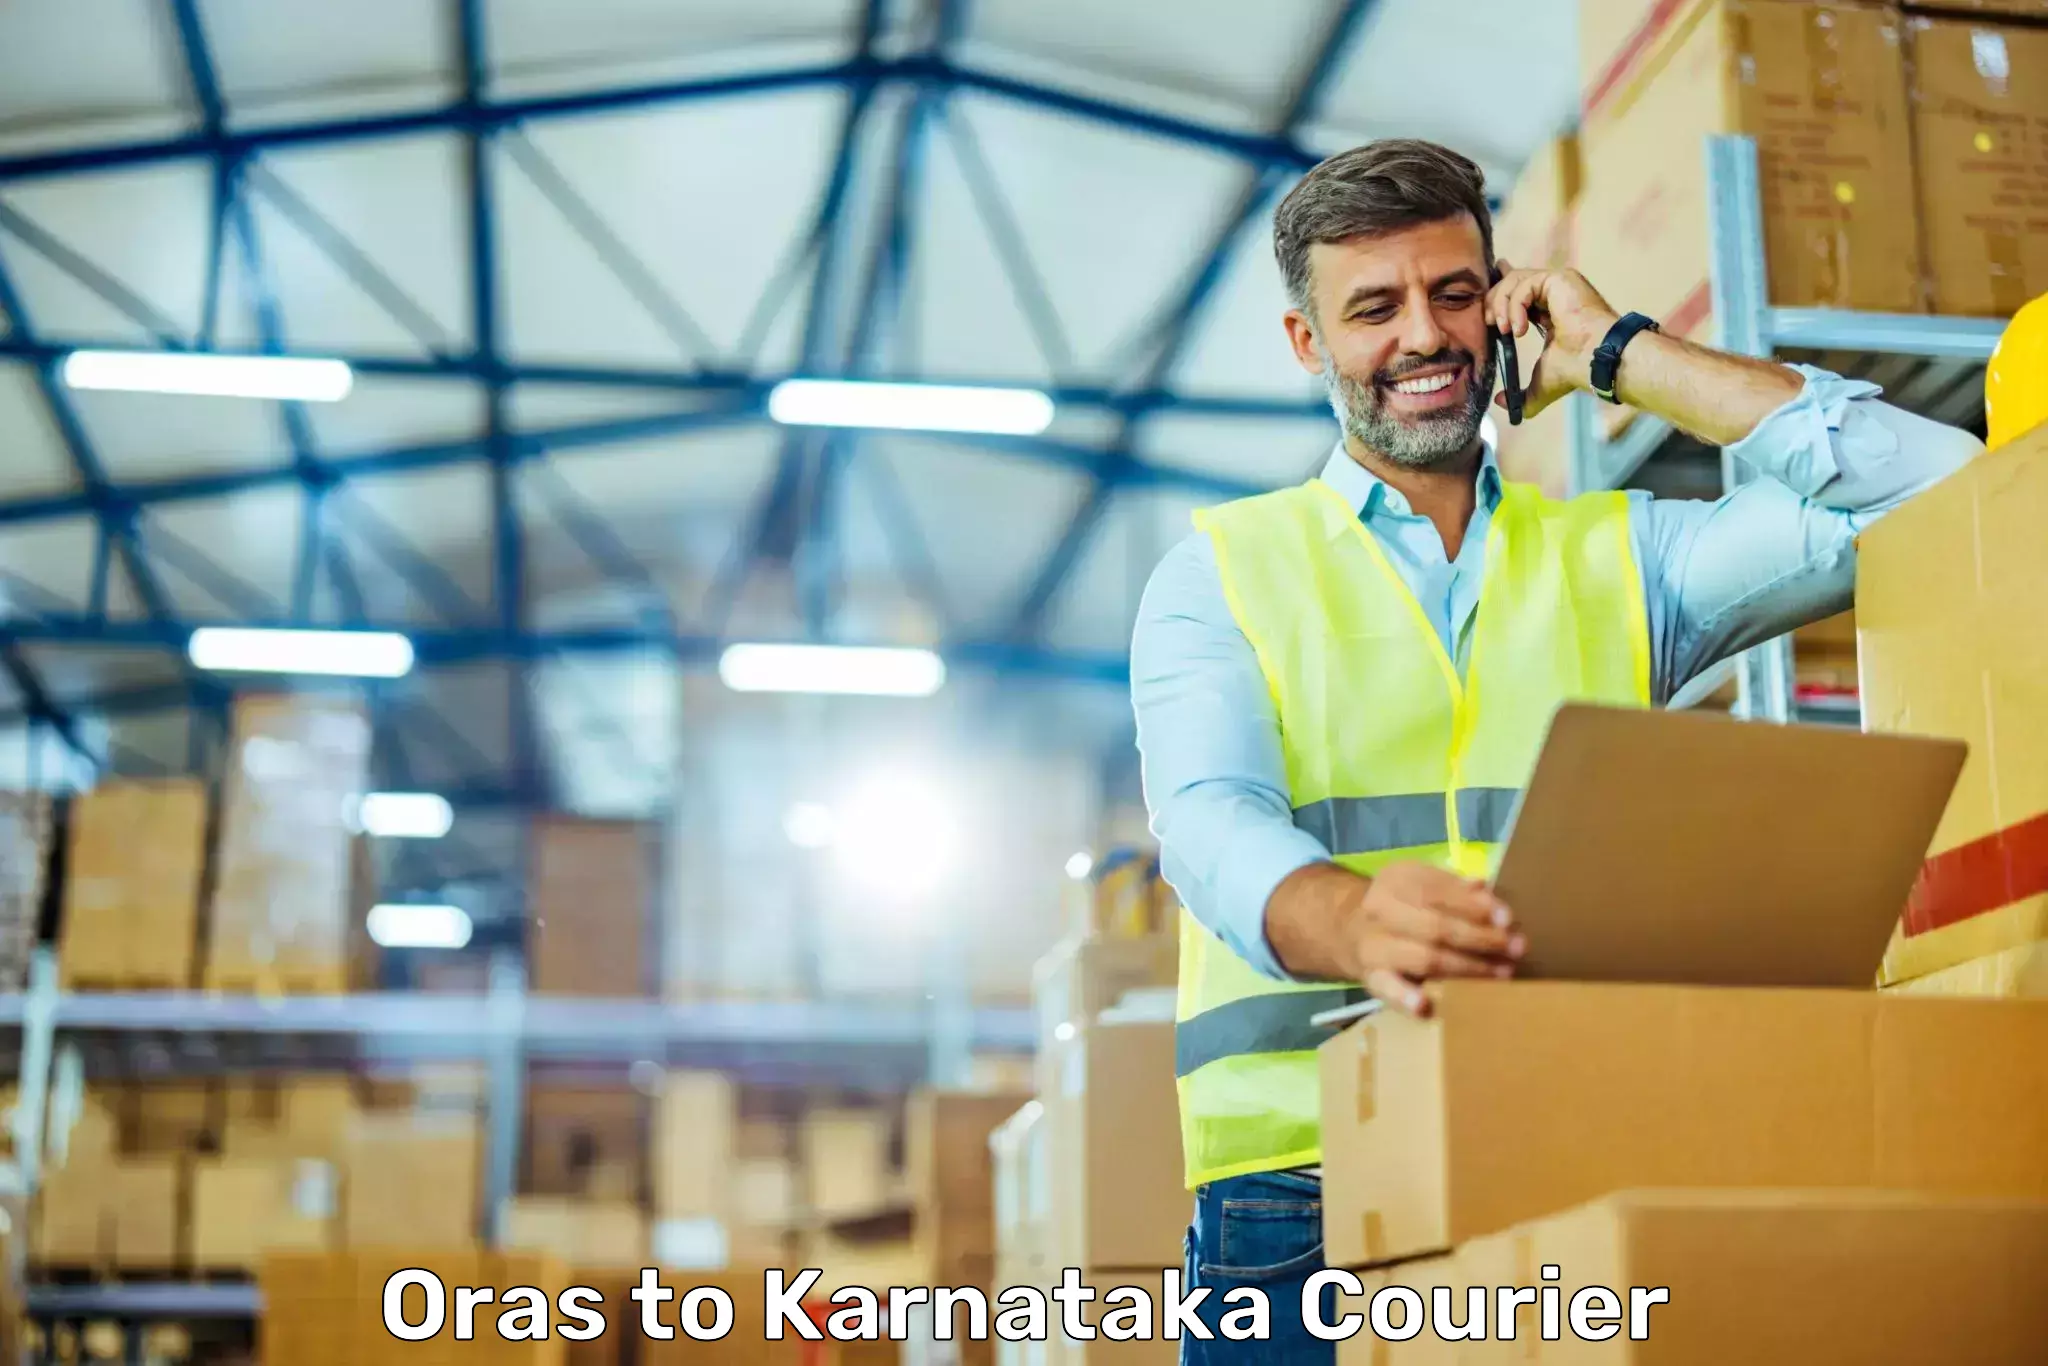 Multi-city courier Oras to Karnataka